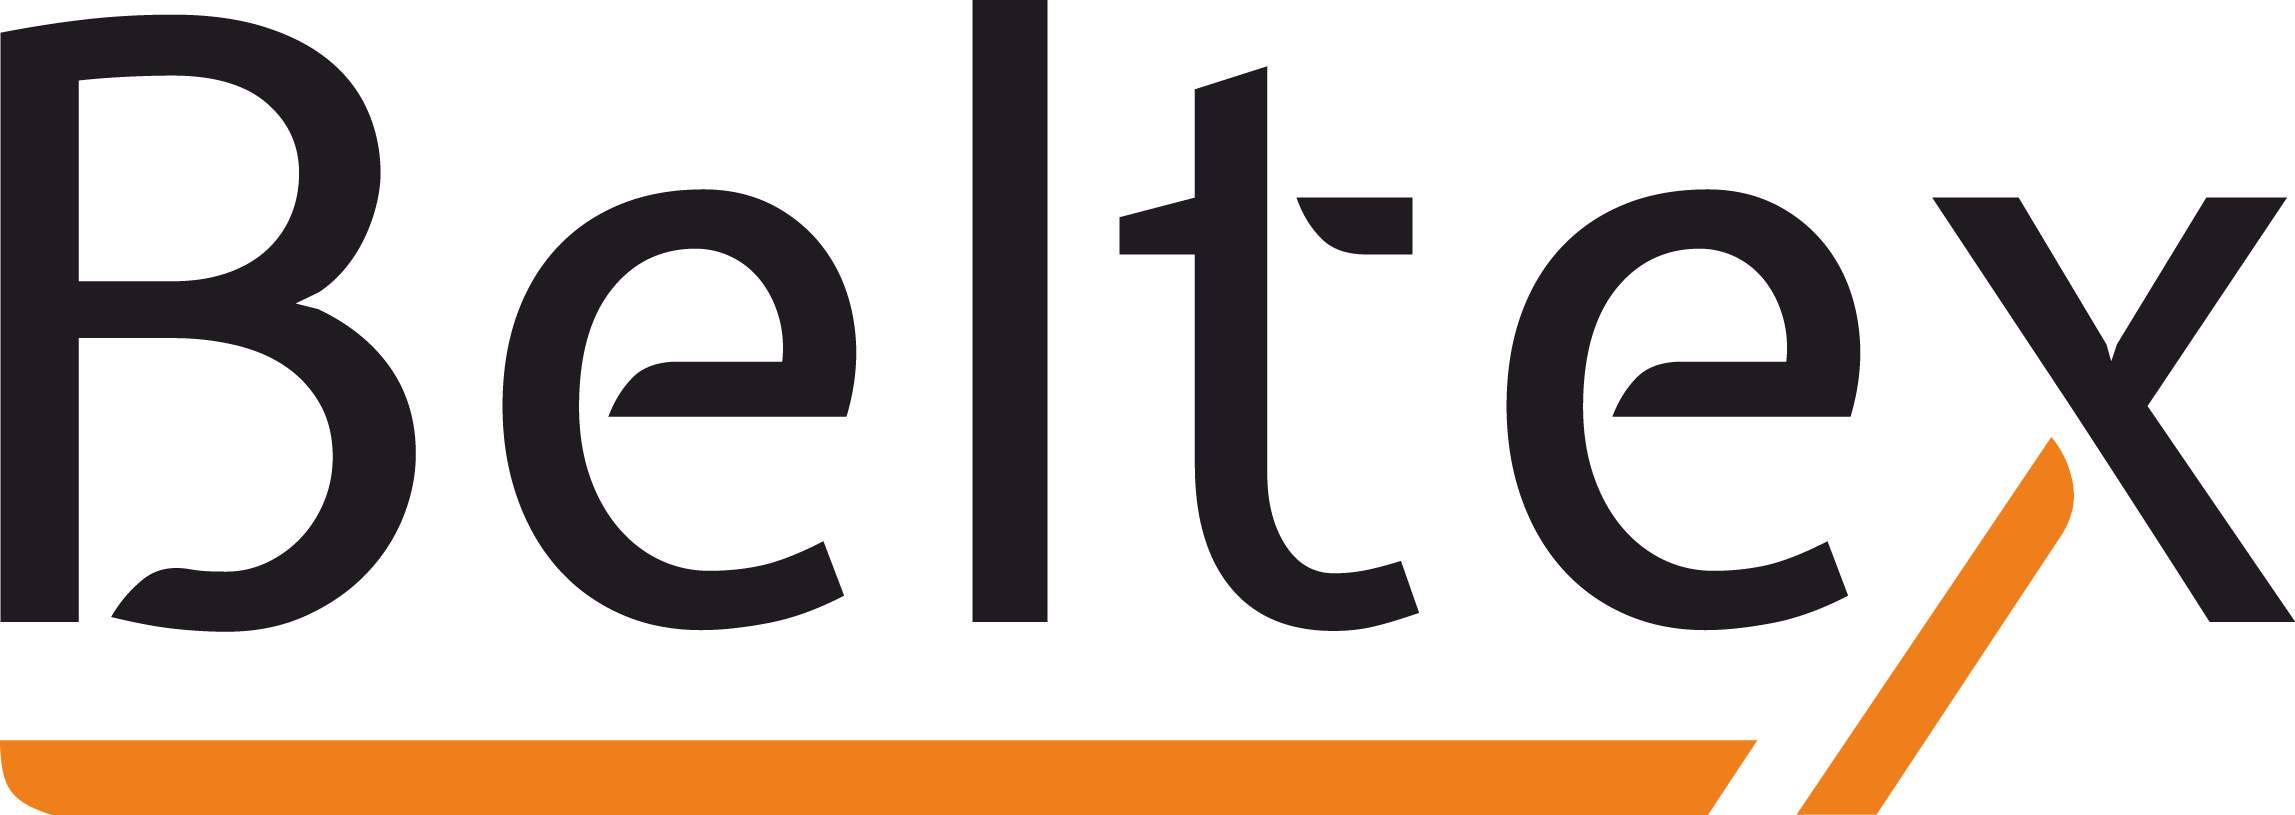 Логотип Beltex